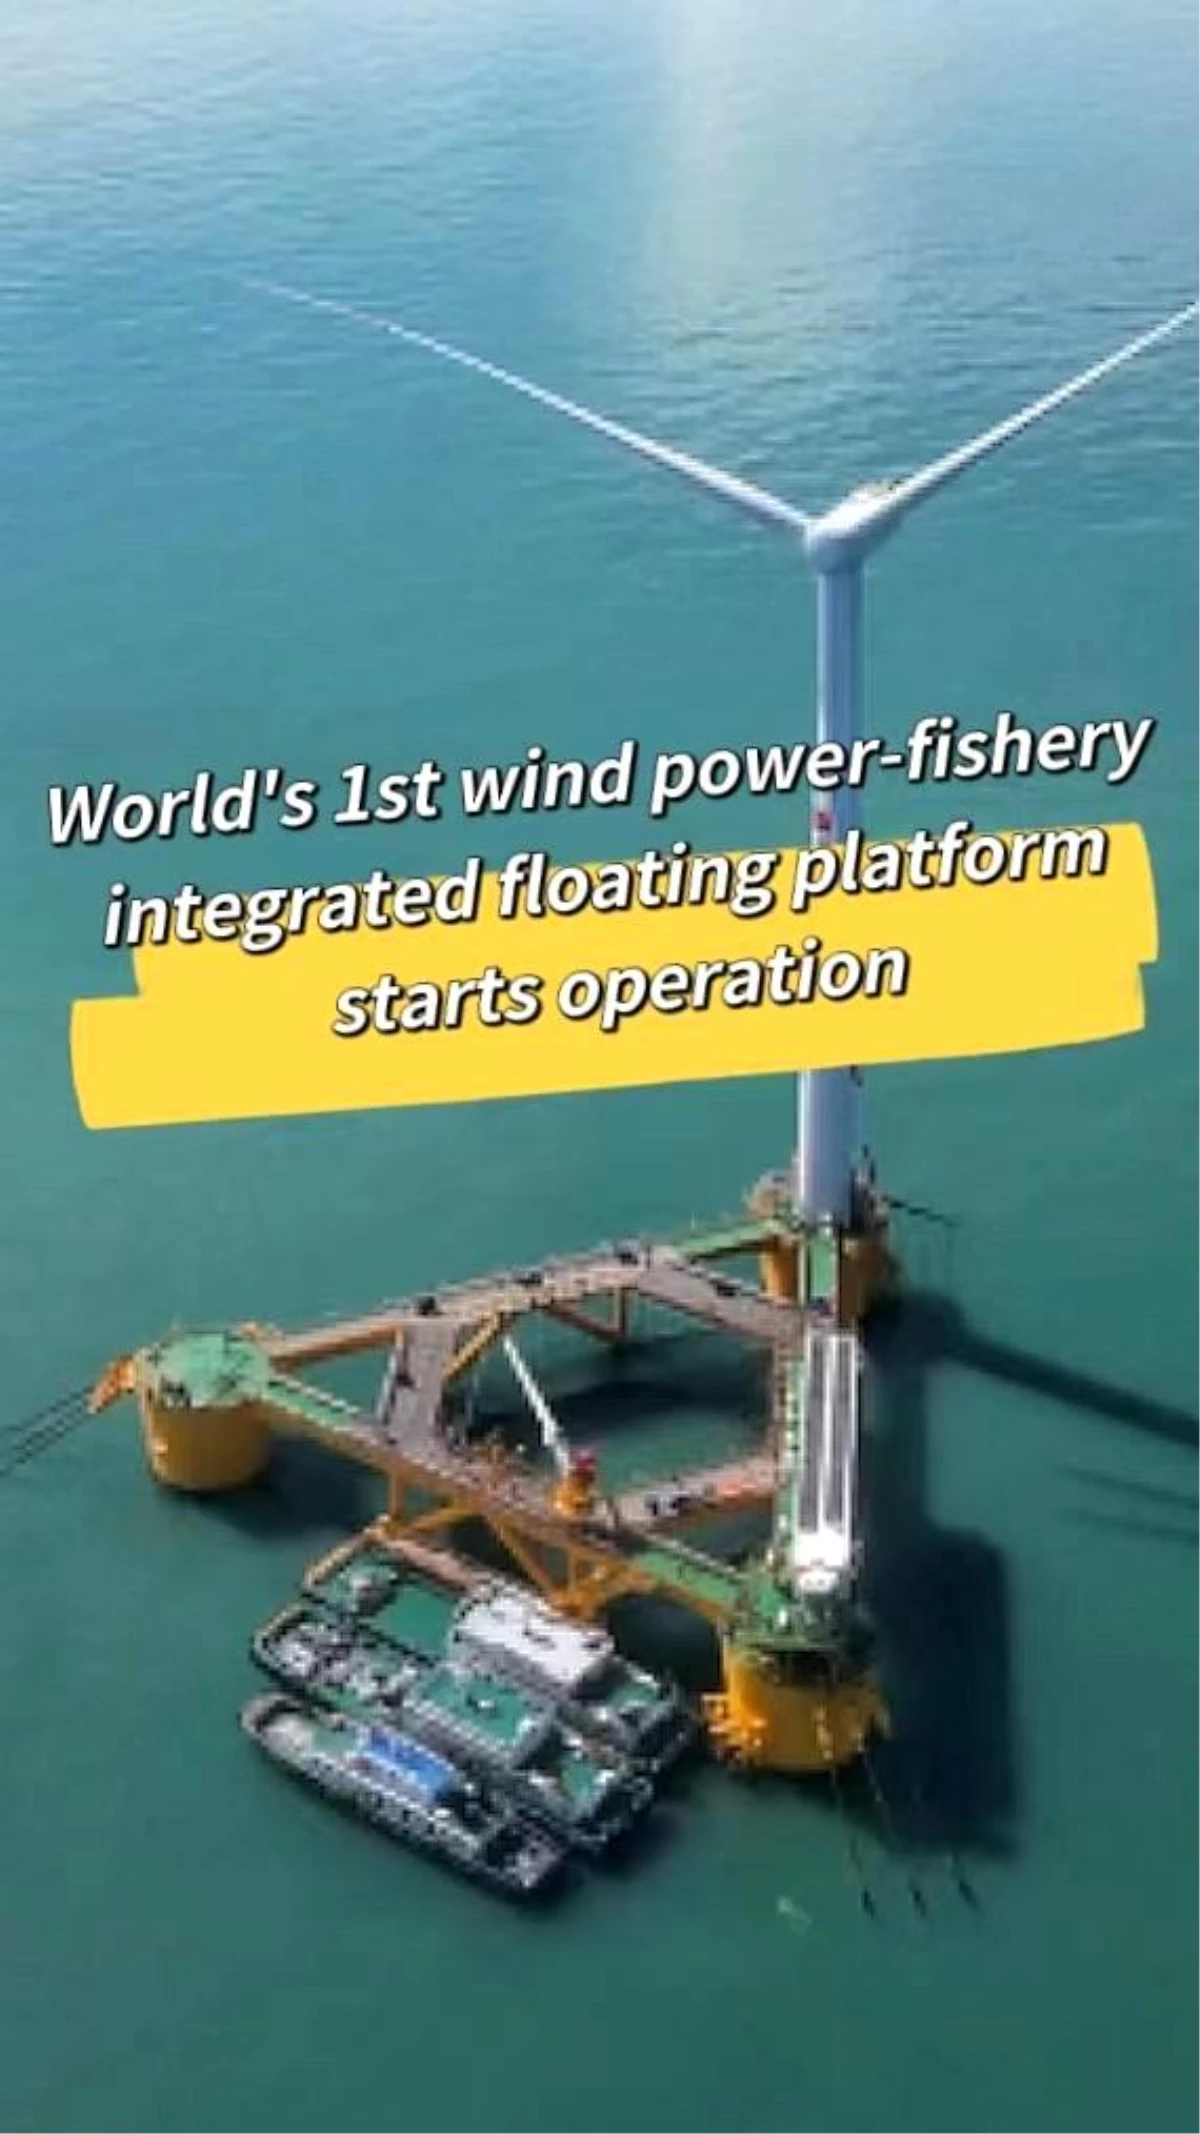 Dünyanın ilk rüzgar enerjisi-balıkçılık entegre yüzer platformu faaliyete geçti